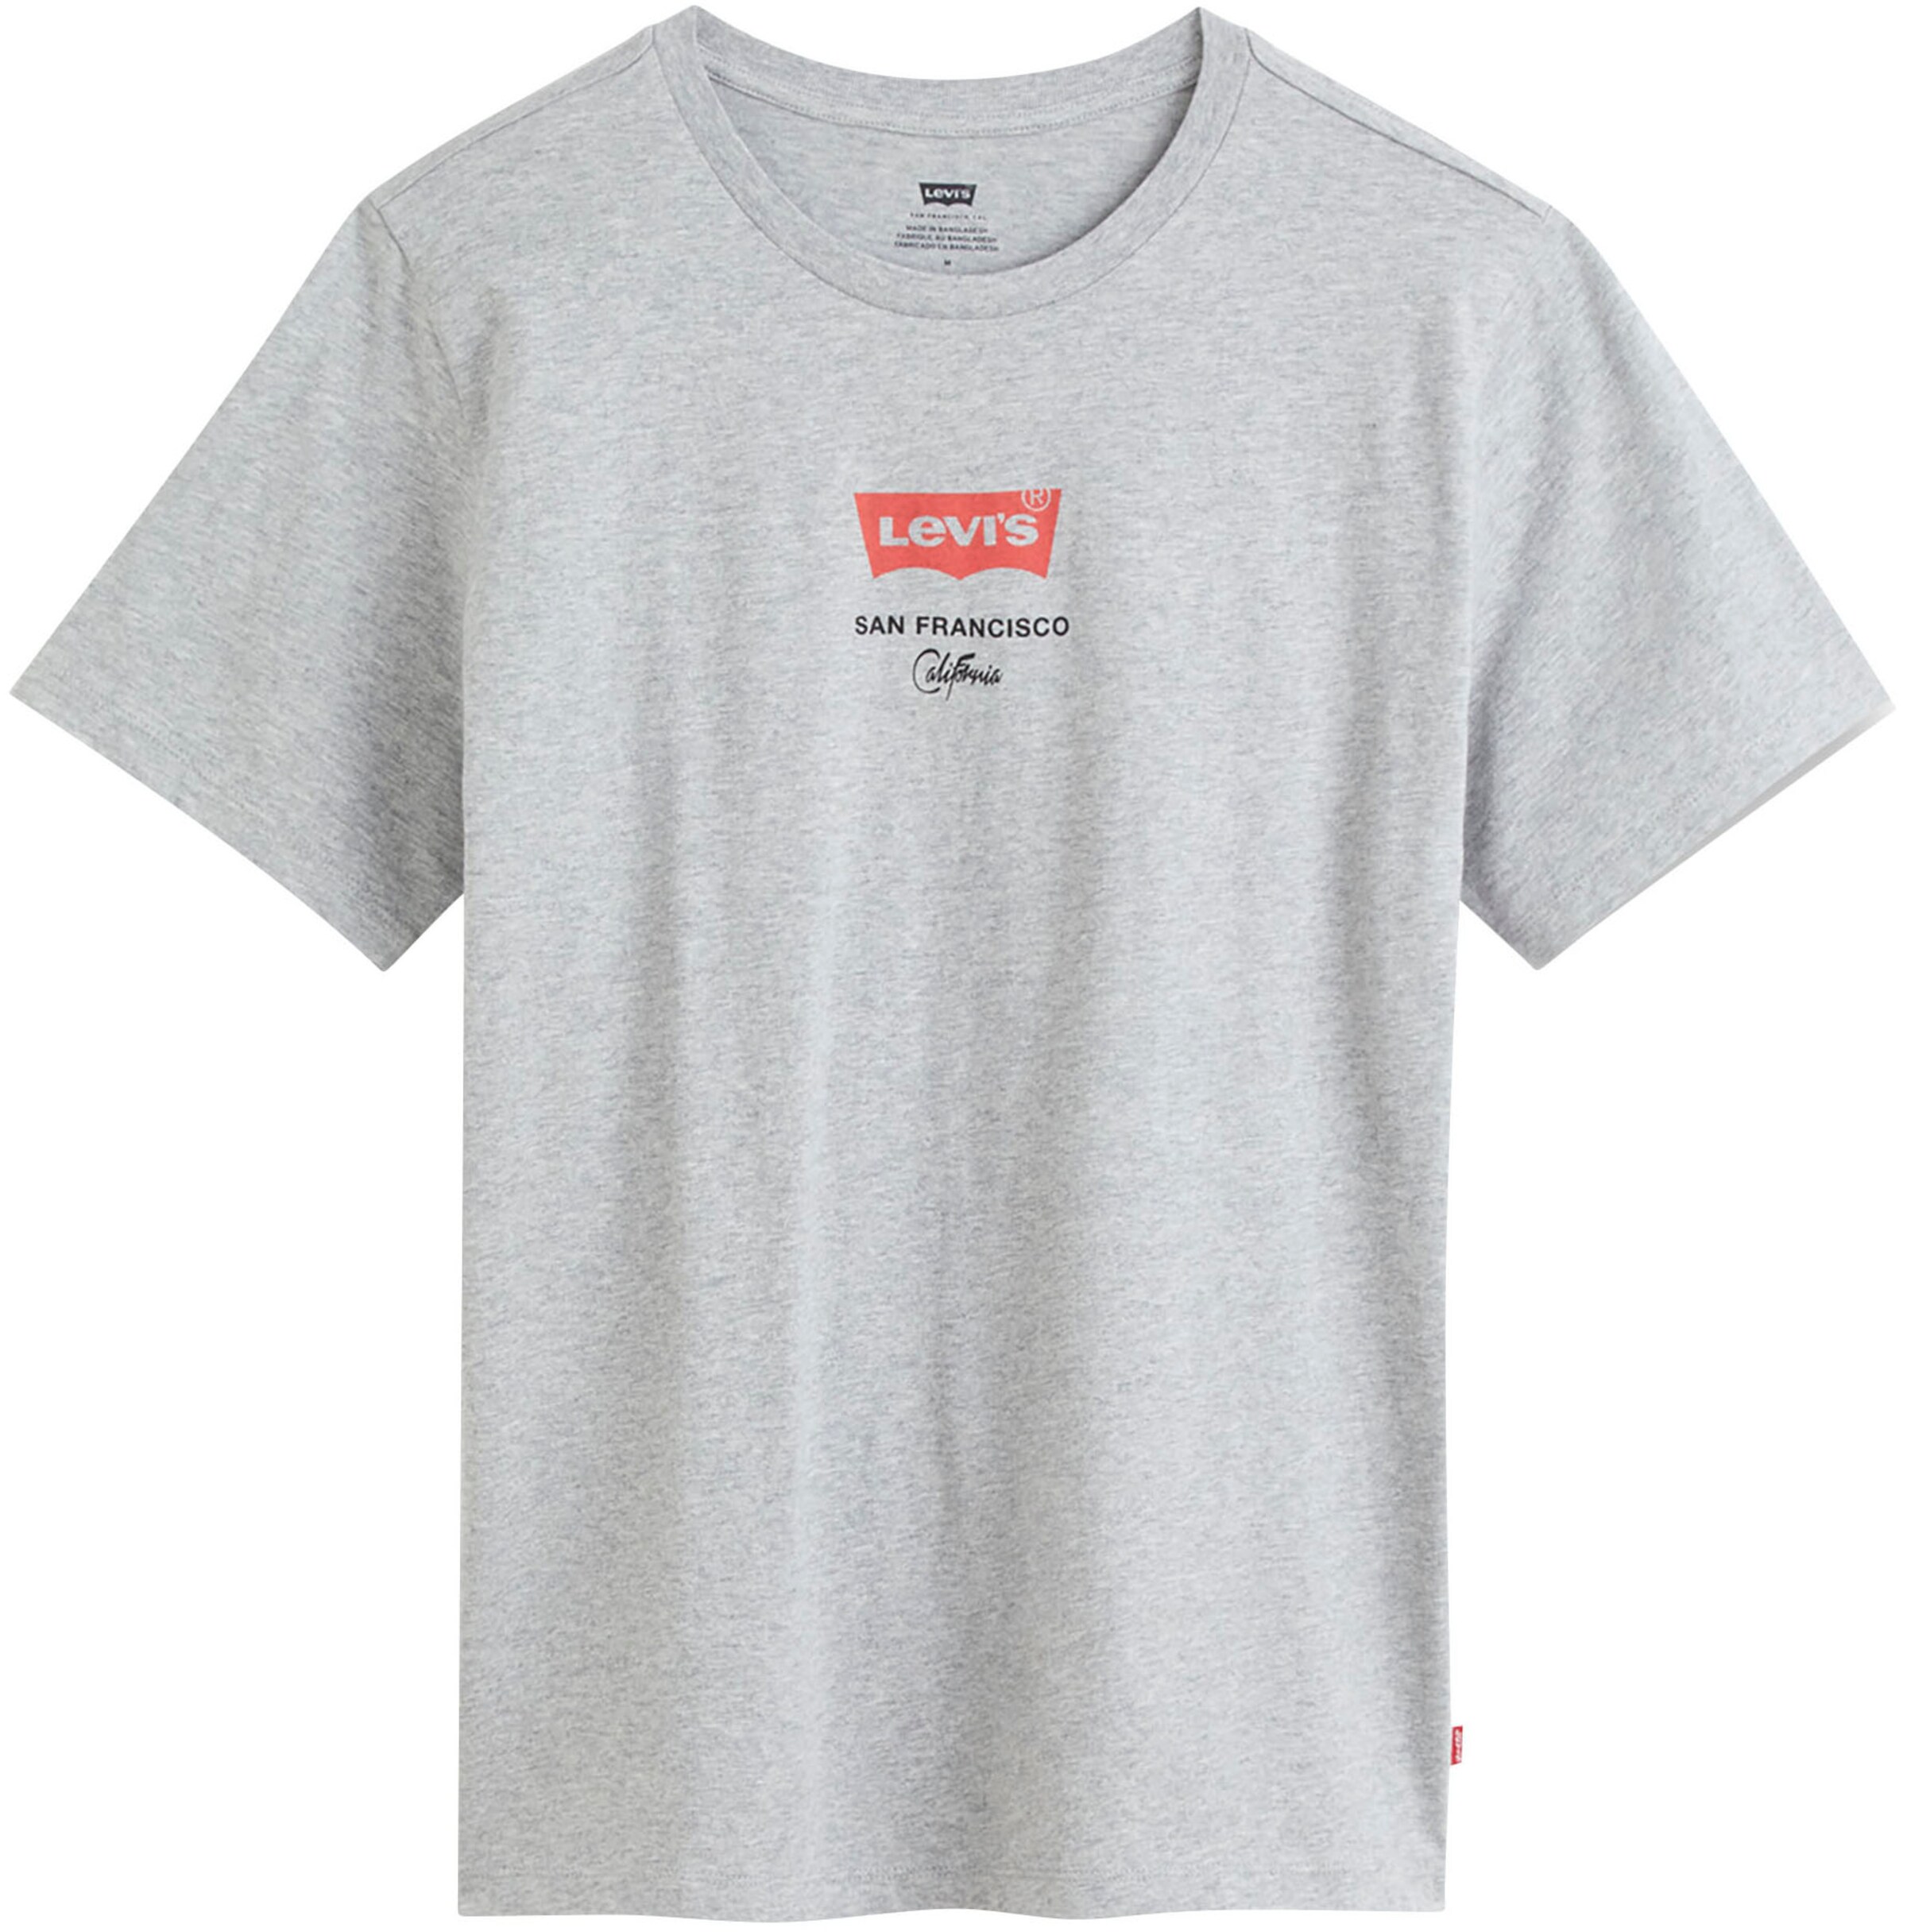 Männer Shirts LEVI'S T-Shirt in Hellgrau - VZ71376